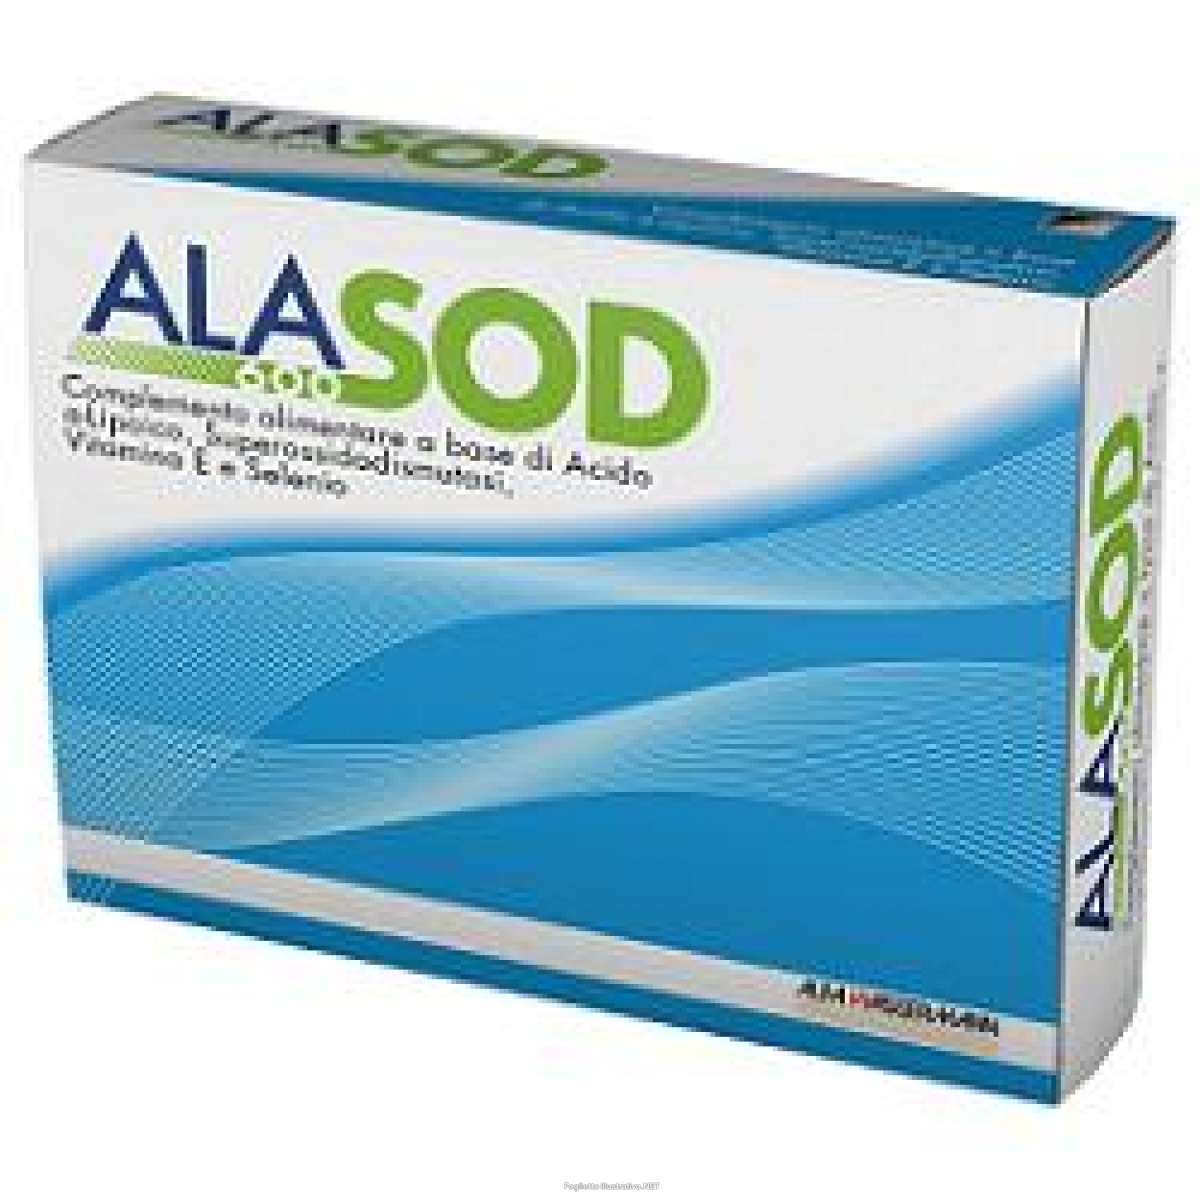 Cerca Offerte di ala600 sod integratore antiossidante e antiage 20 compresse e acquista online